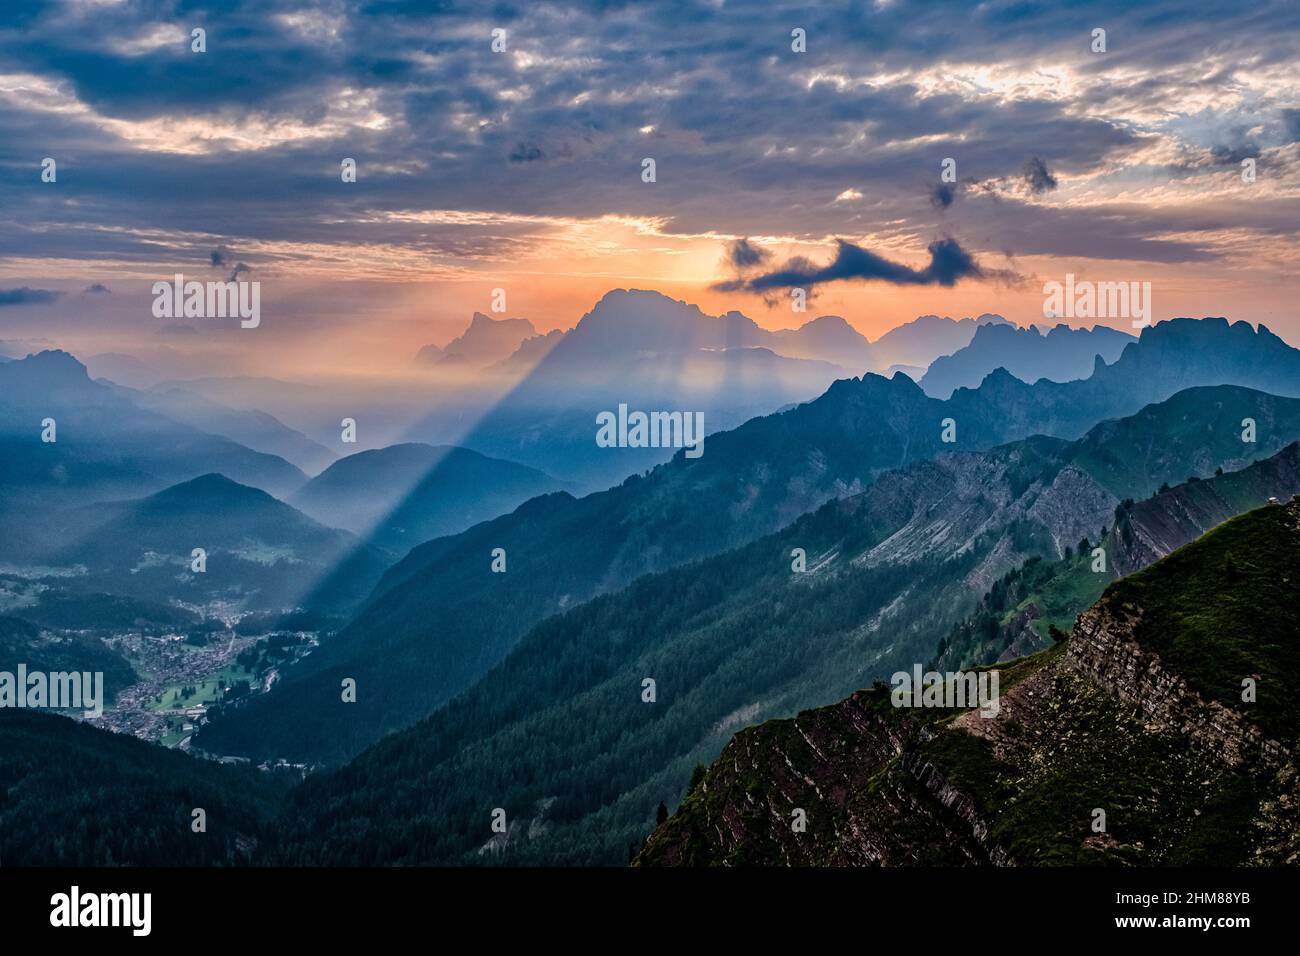 Creste dolomitiche e cime intorno a Falcade nella valle del Biois, Monte Pelmo (a sinistra) e Civetta in lontananza, visto dall'alto del Passo delle Valles al sole Foto Stock